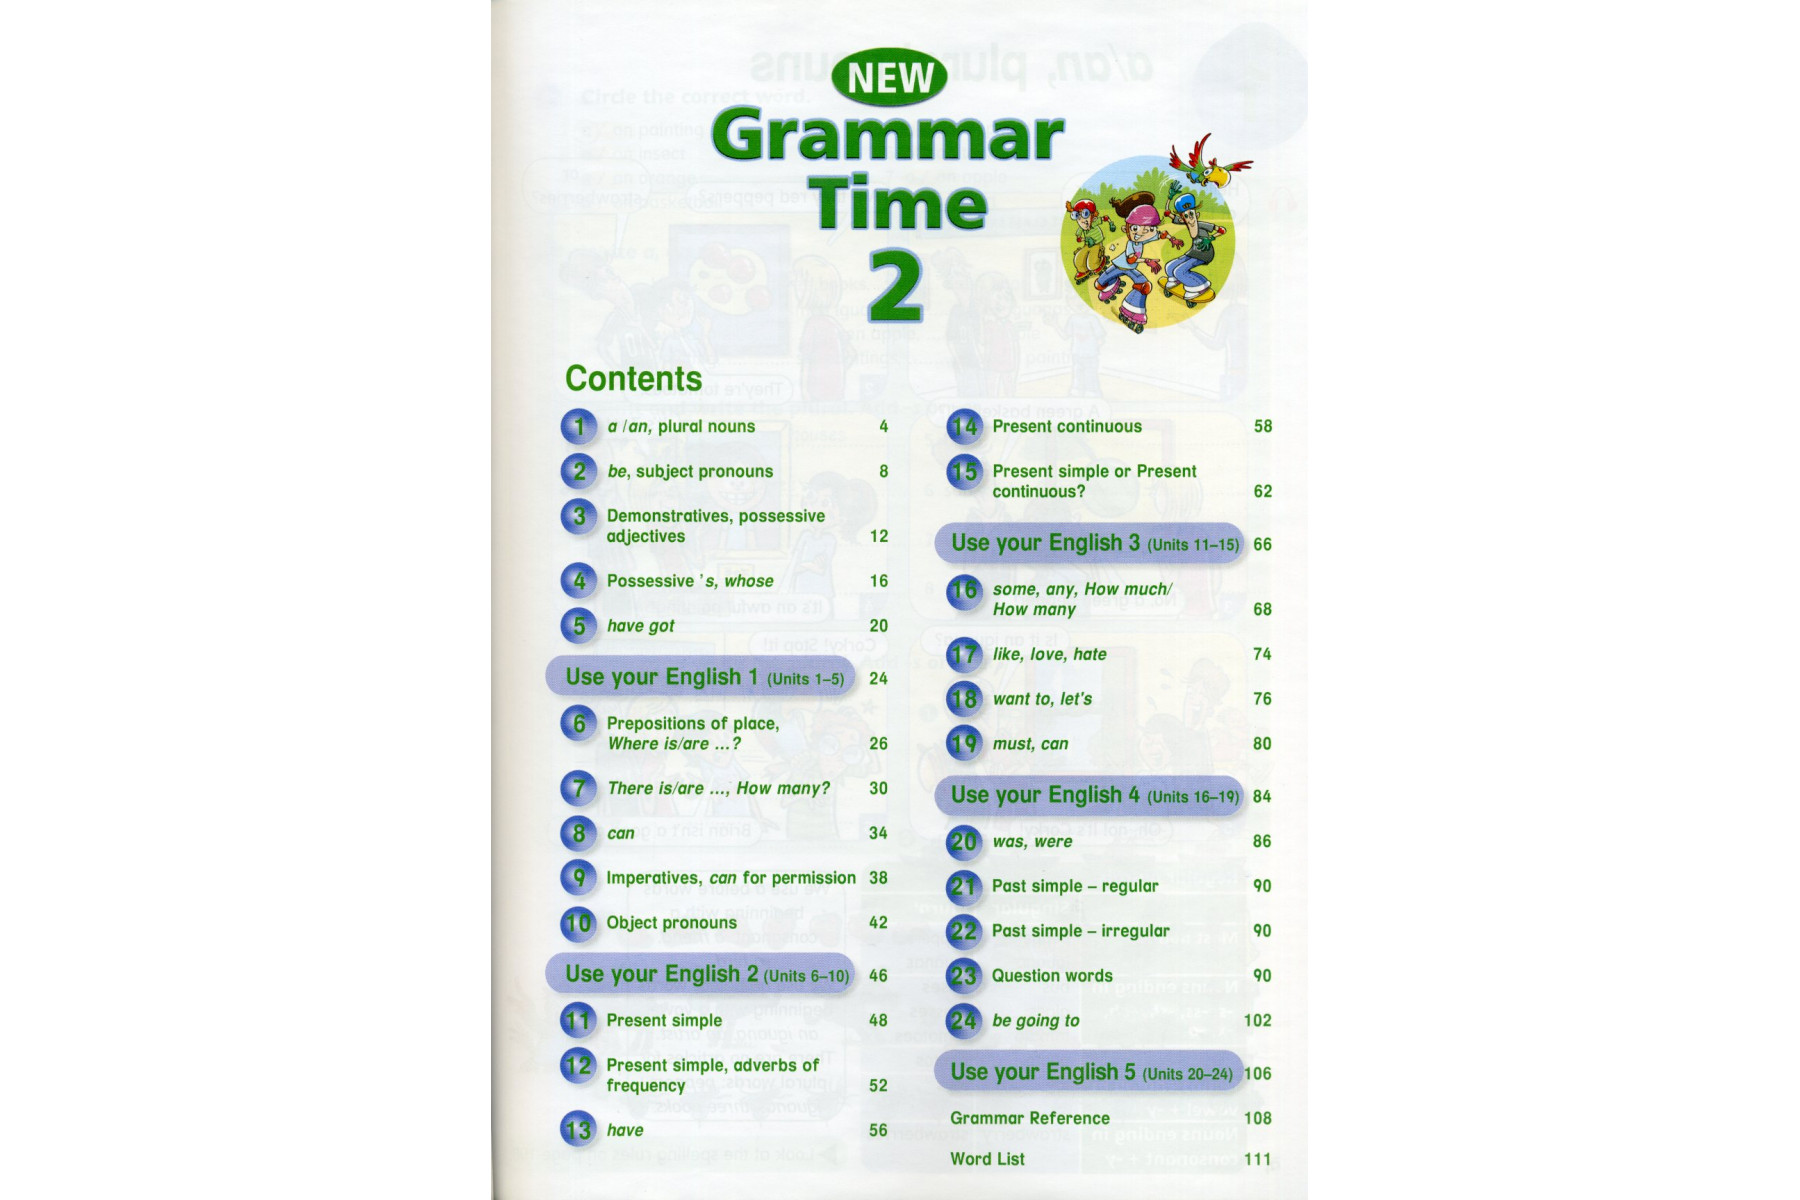 New Grammar Time 2